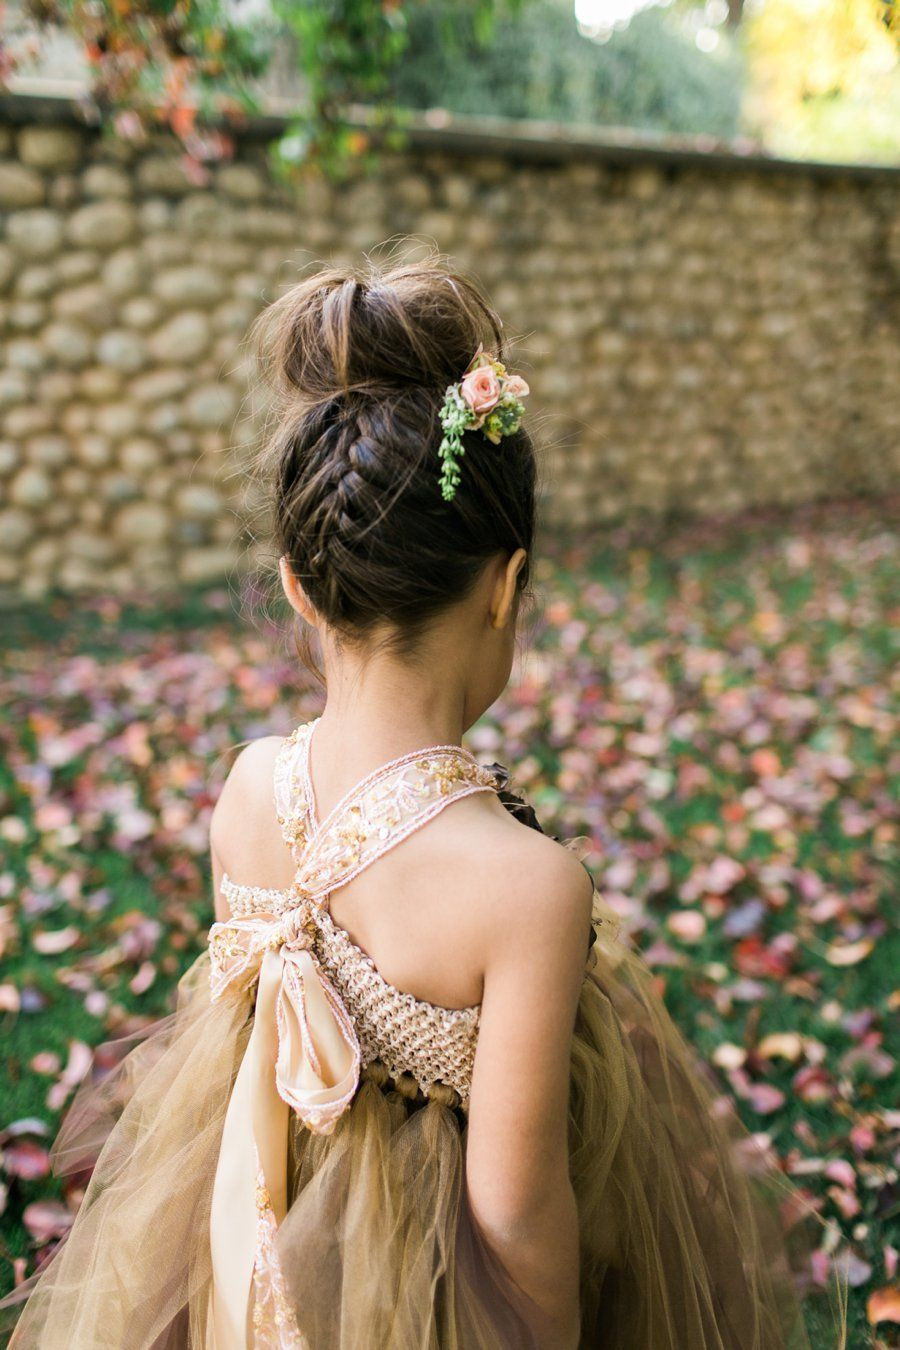 Flower Girl Wedding Hairstyles
 Forest Inspired Indoor Wedding Flower Girls